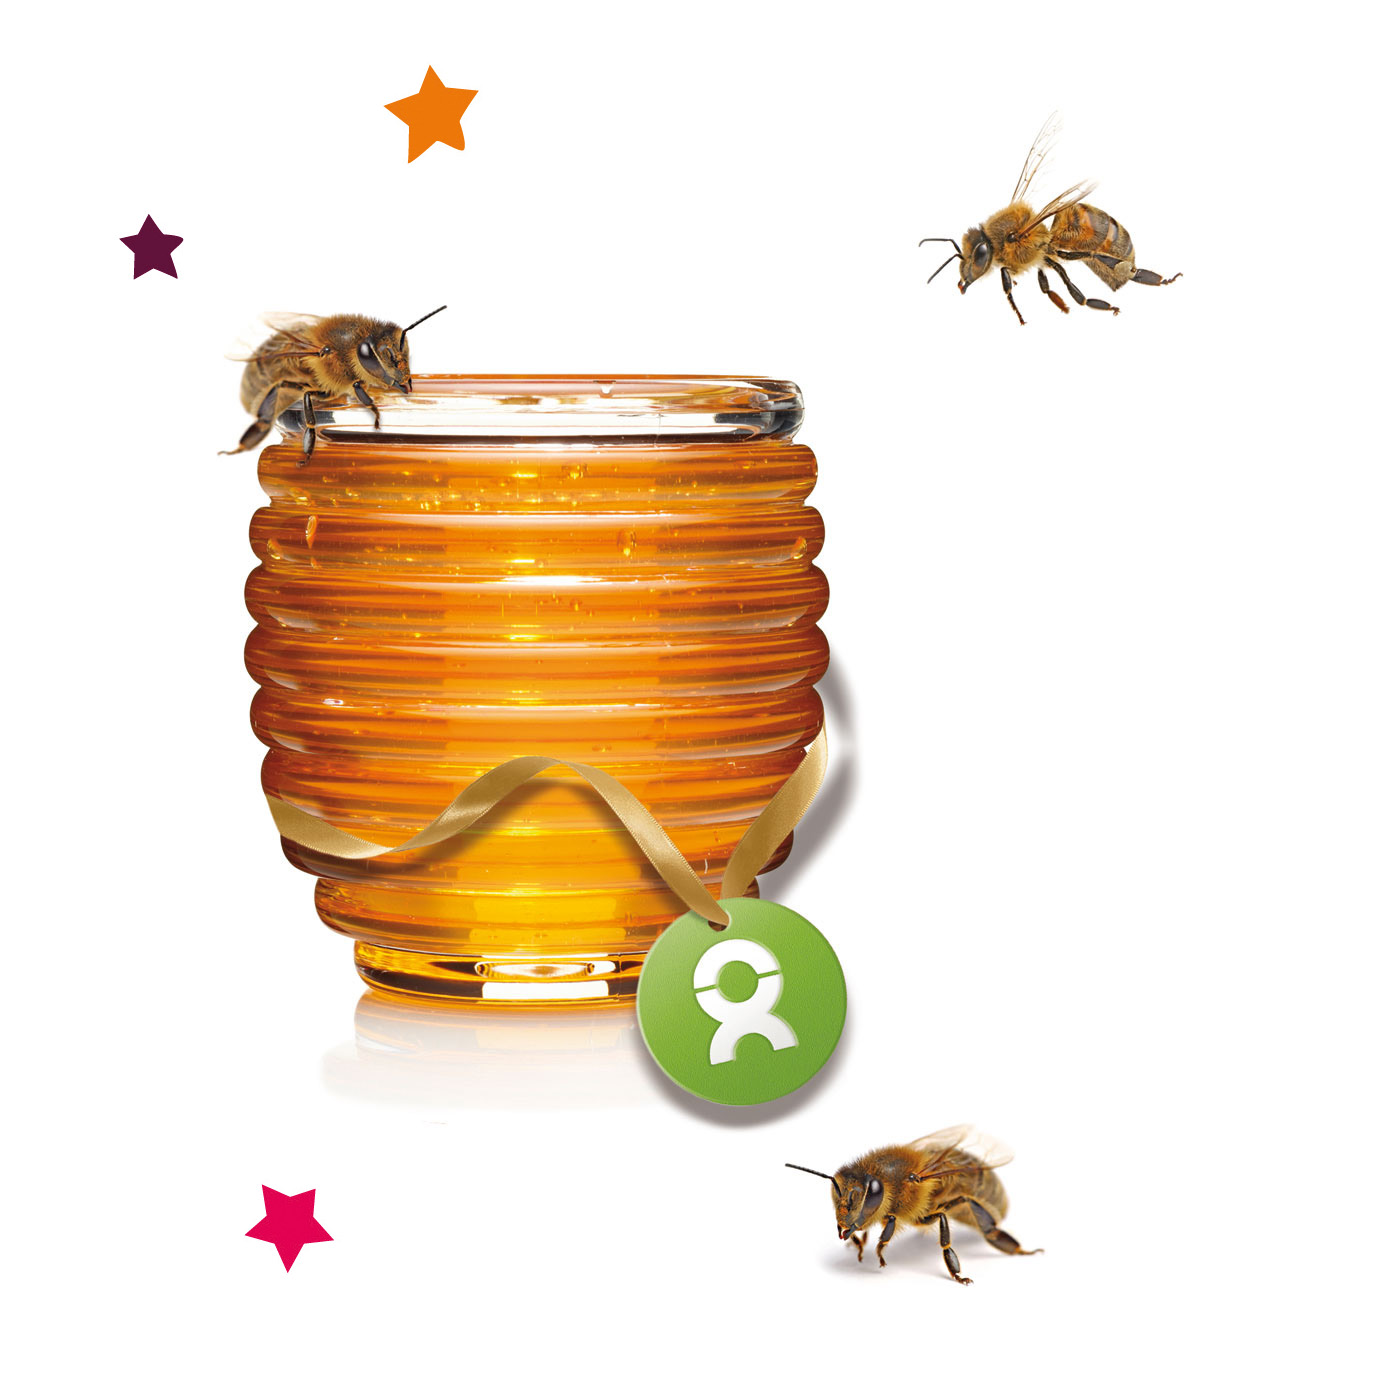 Beispiel Geschenk Spende Weihnachten Honigbienen fliegen um ein mit bunten Sternen umrahmtes Honigglas herum